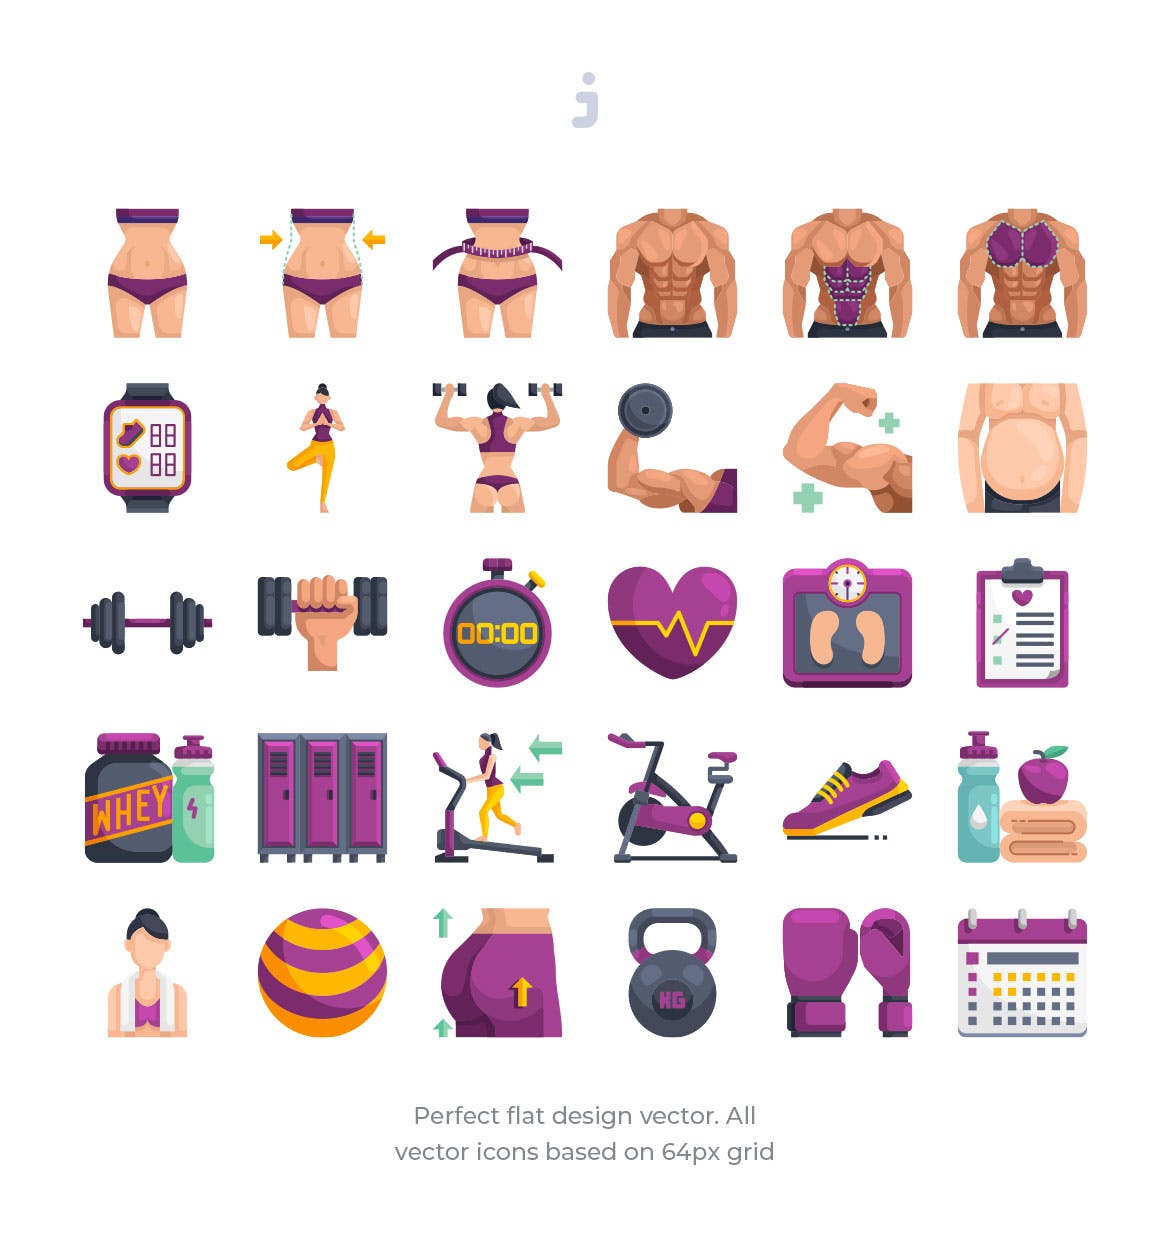 30枚健身运动主题扁平化矢量第一素材精选图标 30 Fitness & Gym Icons – Flat插图(1)